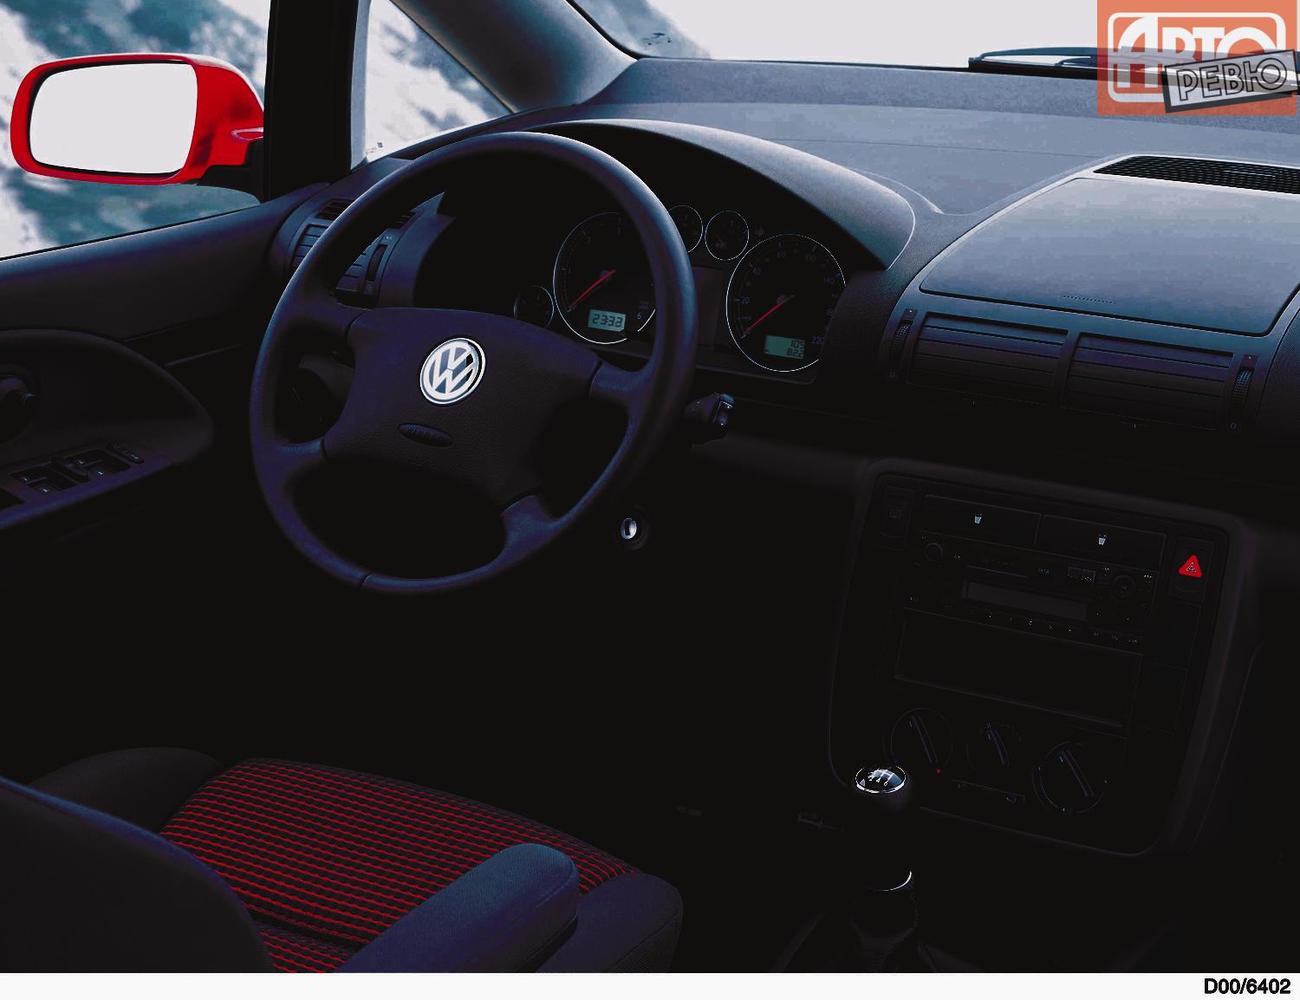 минивэн Volkswagen Sharan 2000 - 2003г выпуска модификация 1.8 AT (150 л.с.)